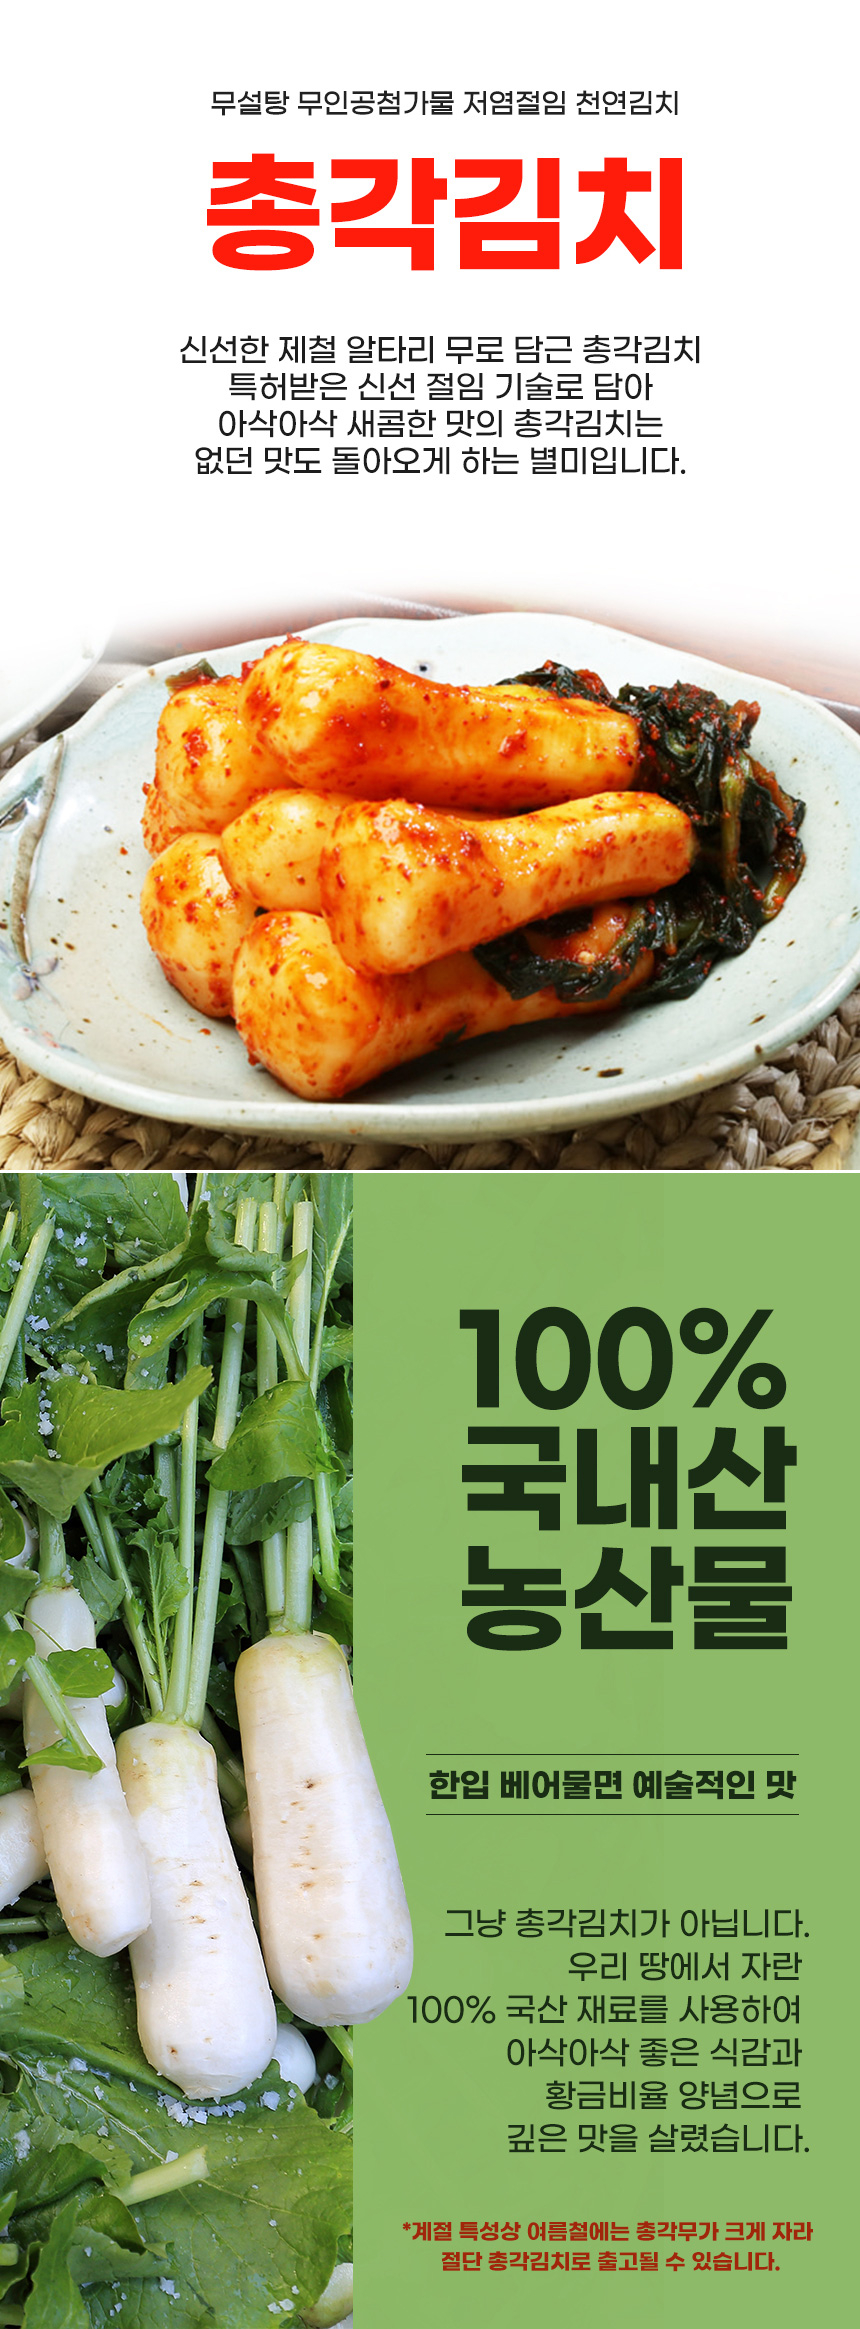 韓國食品-[Ilpum] Ponytail Radish Kimchi 1kg